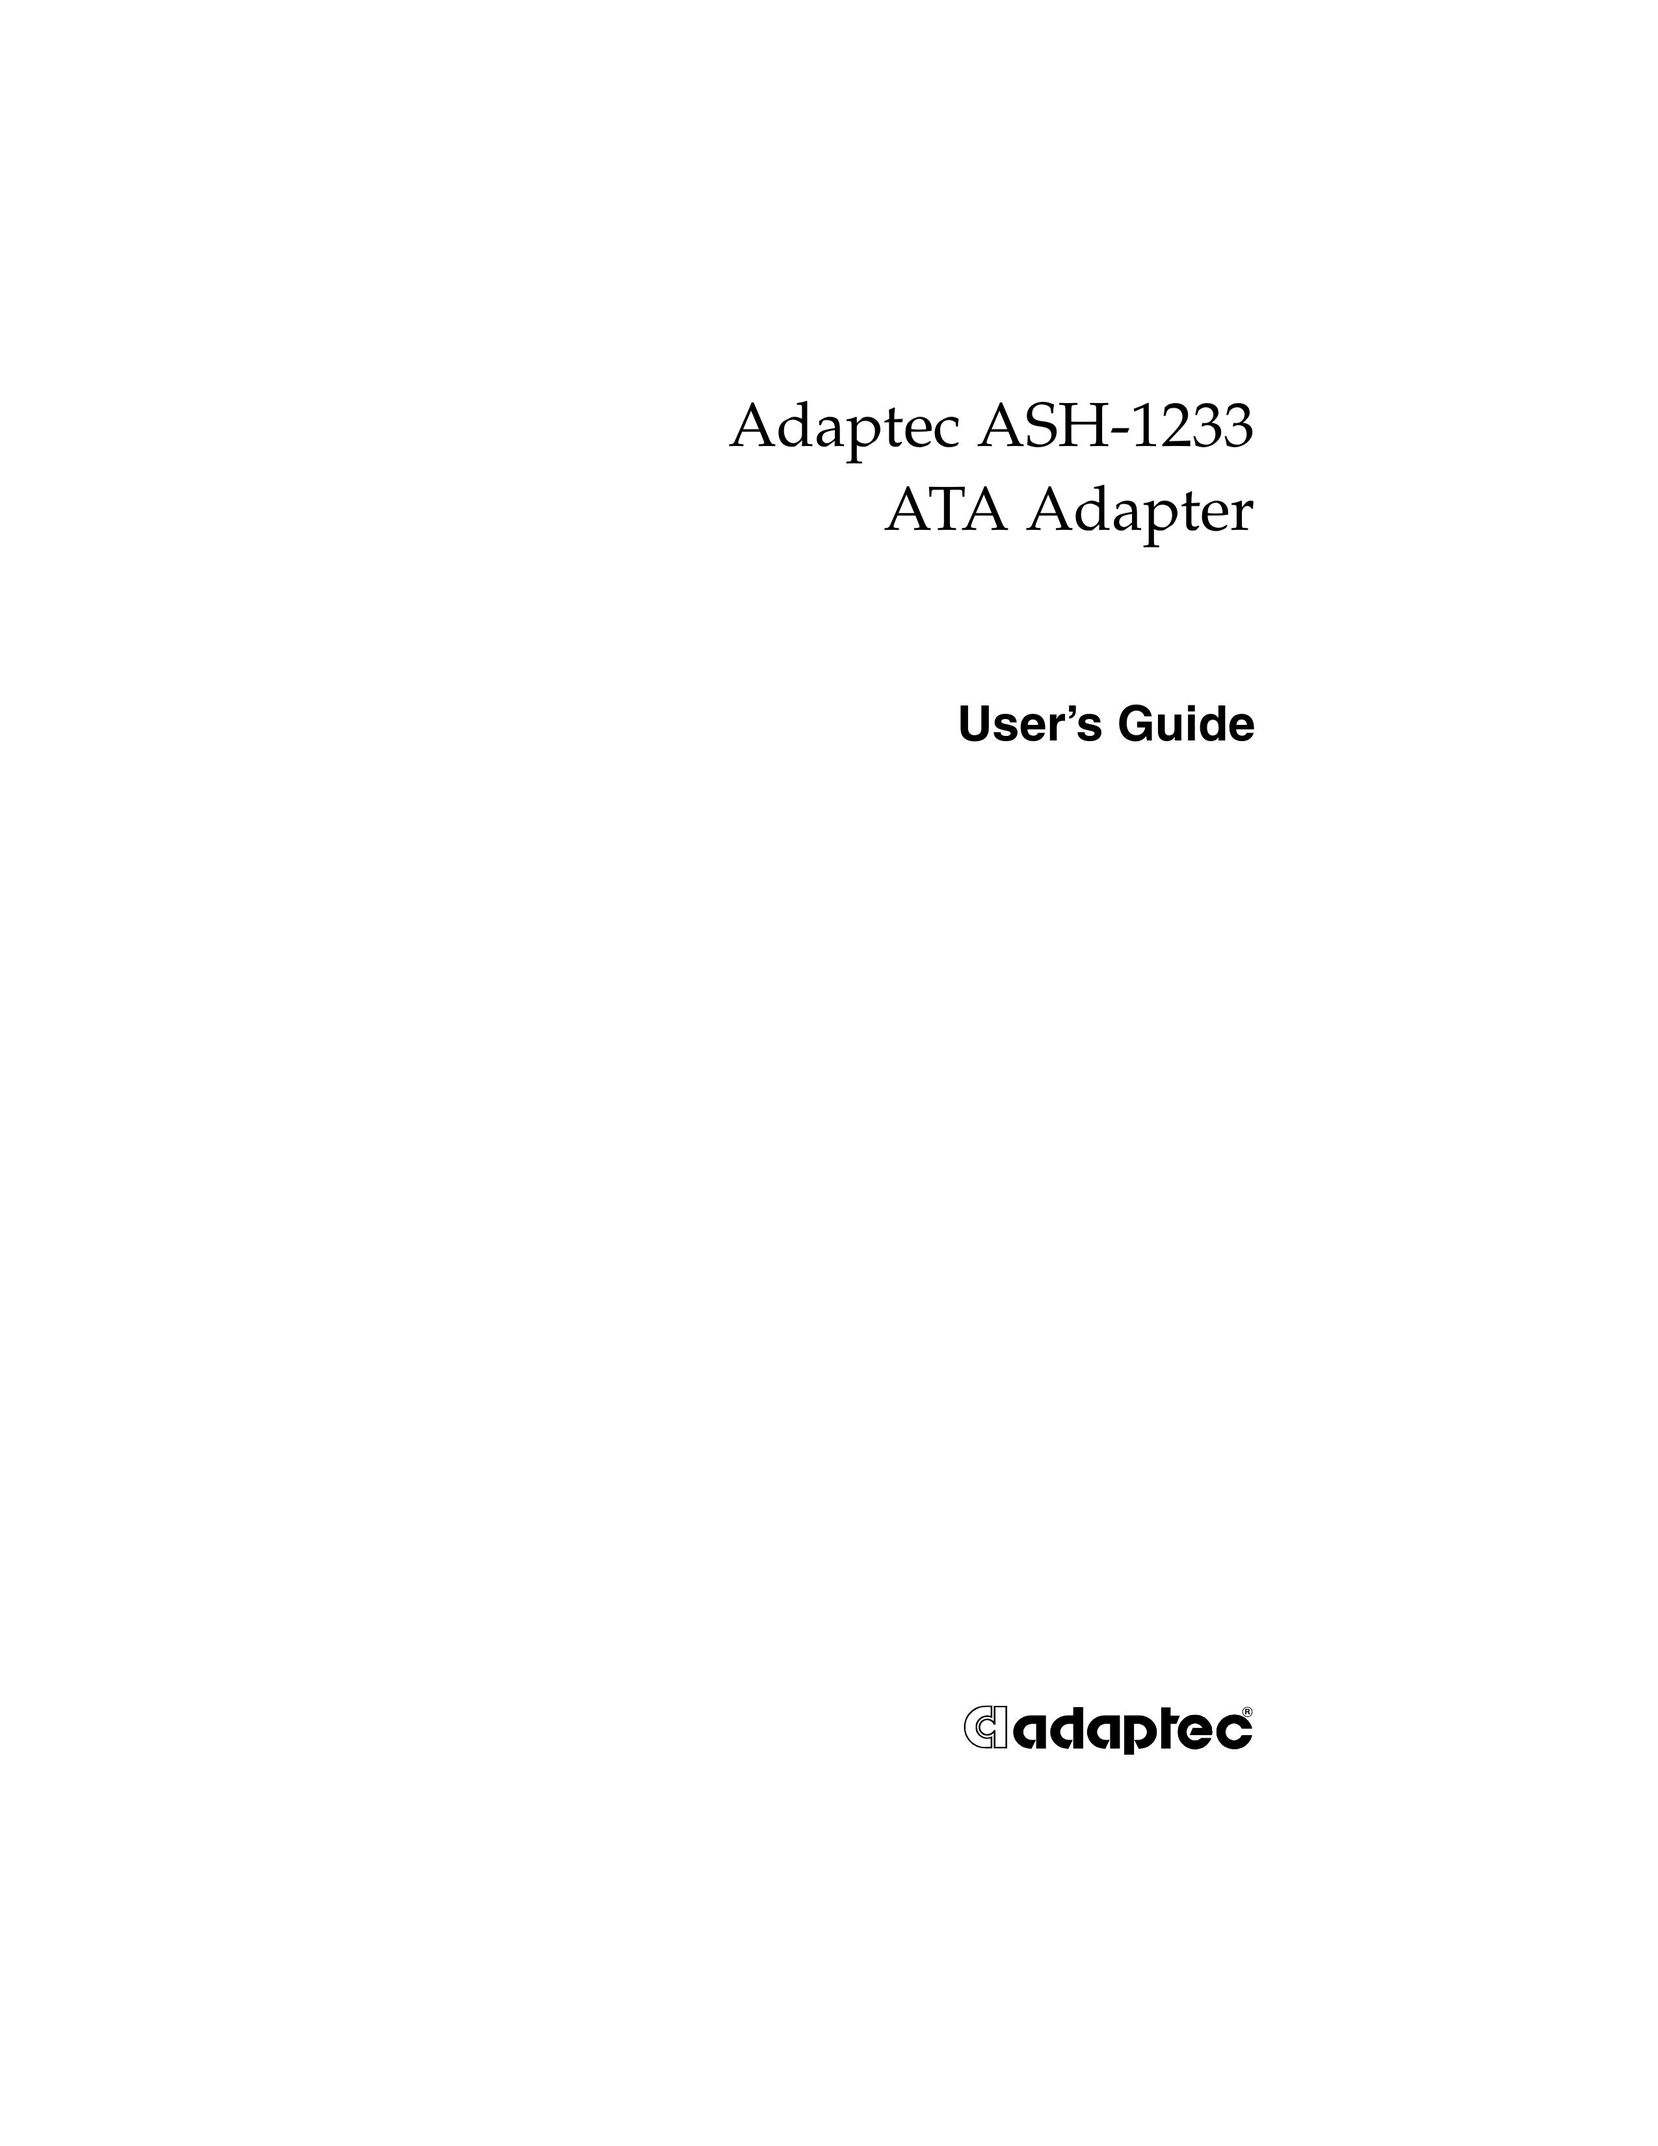 Adaptec ASH-1233 Network Card User Manual